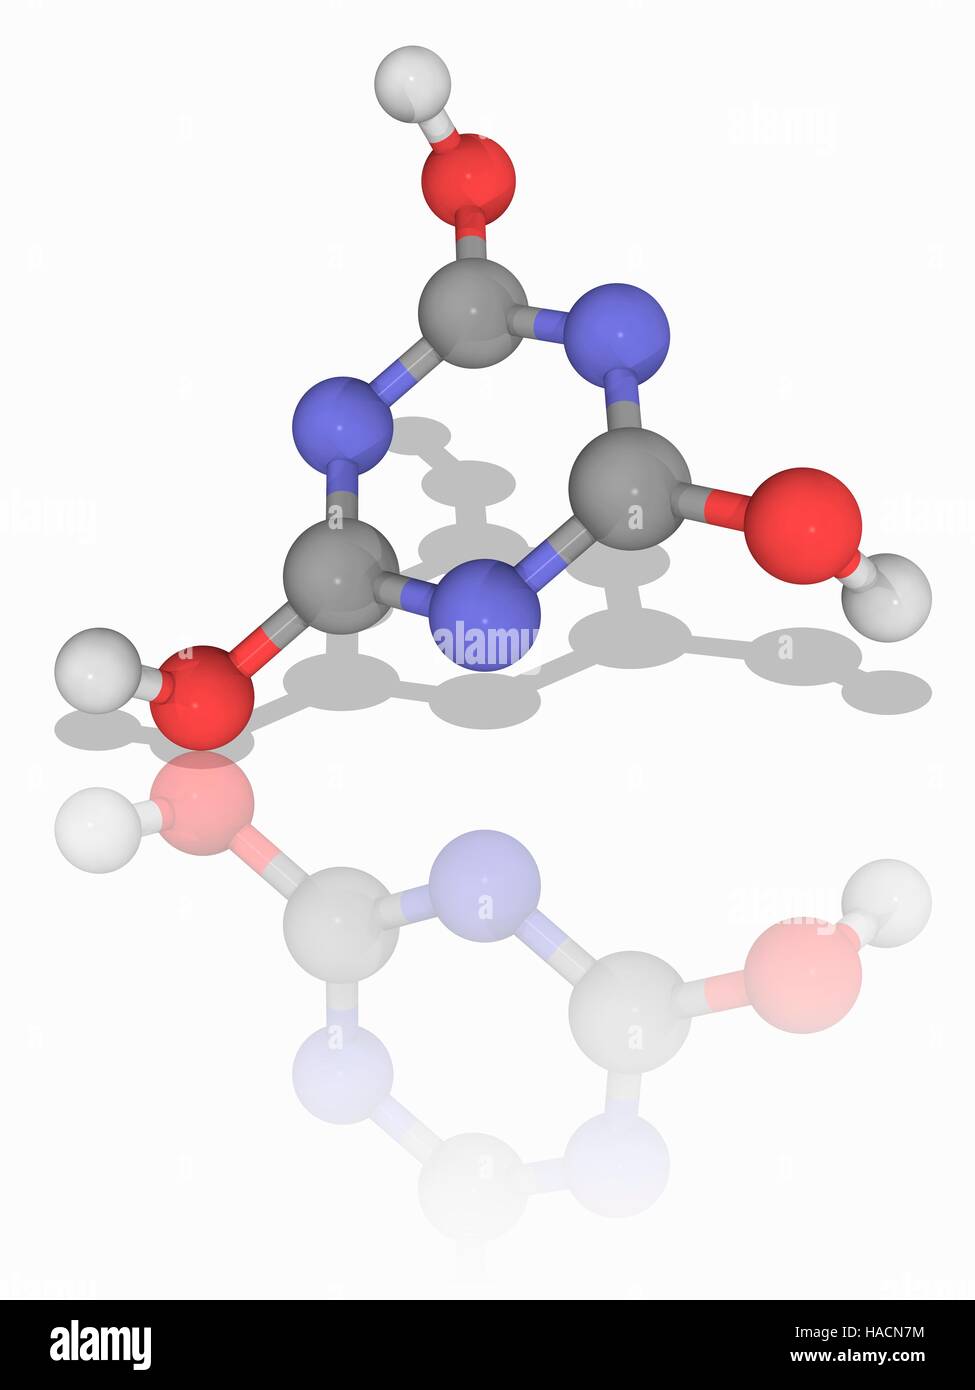 Cyanursäure. Molekülmodell der organischen Verbindung Cyanursäure (C3. H3. N3. O3). Ein Triazin (stickstoffhaltige Heterozyklische Verbindung), ist es ein Vorläufer Chemikalie oder eine Komponente von Bleichmittel, Desinfektionsmittel und Herbiziden. Atome als Kugeln dargestellt werden und sind farblich gekennzeichnet: Kohlenstoff (grau), Wasserstoff (weiß) und Sauerstoff (rot). Abbildung. Stockfoto